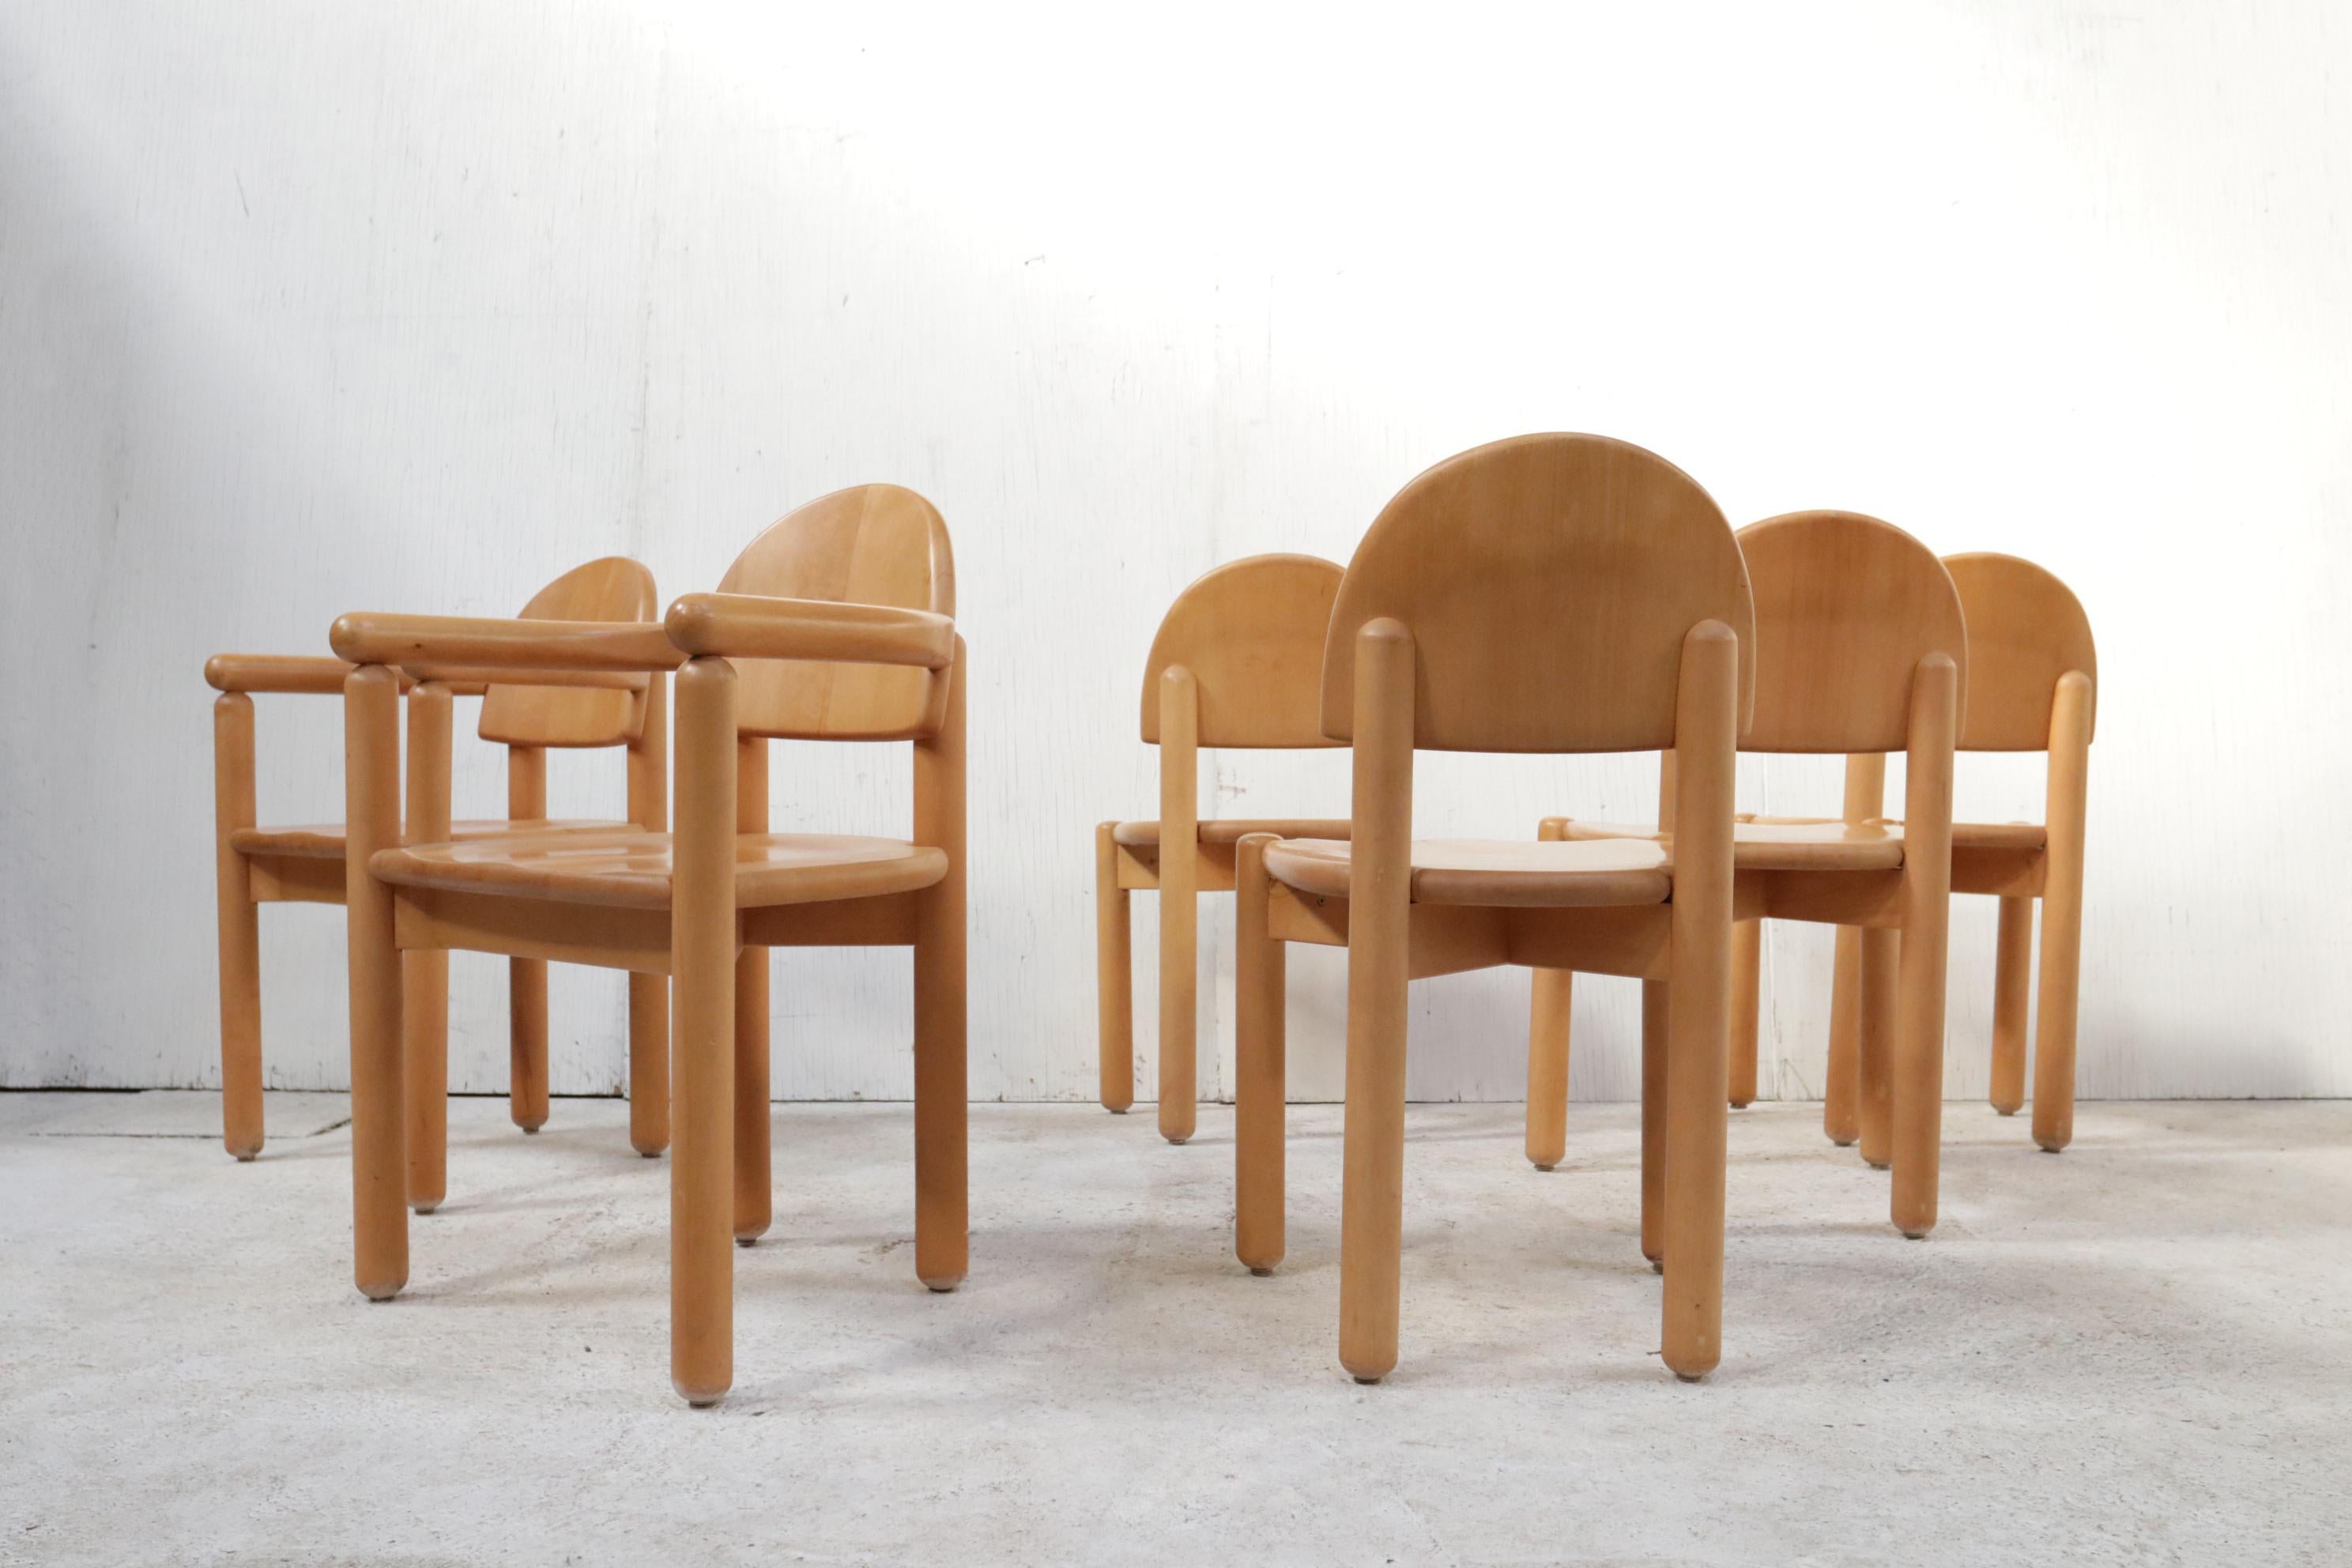 Magnifique ensemble de six chaises de salle à manger très sculpturales en bois de Beeche par l'architecte et designer suédois Rainer Daumiller, fabriquées par Hirtshalls Sawmills. 
La variante en hêtre est plus rare à trouver que la variante en